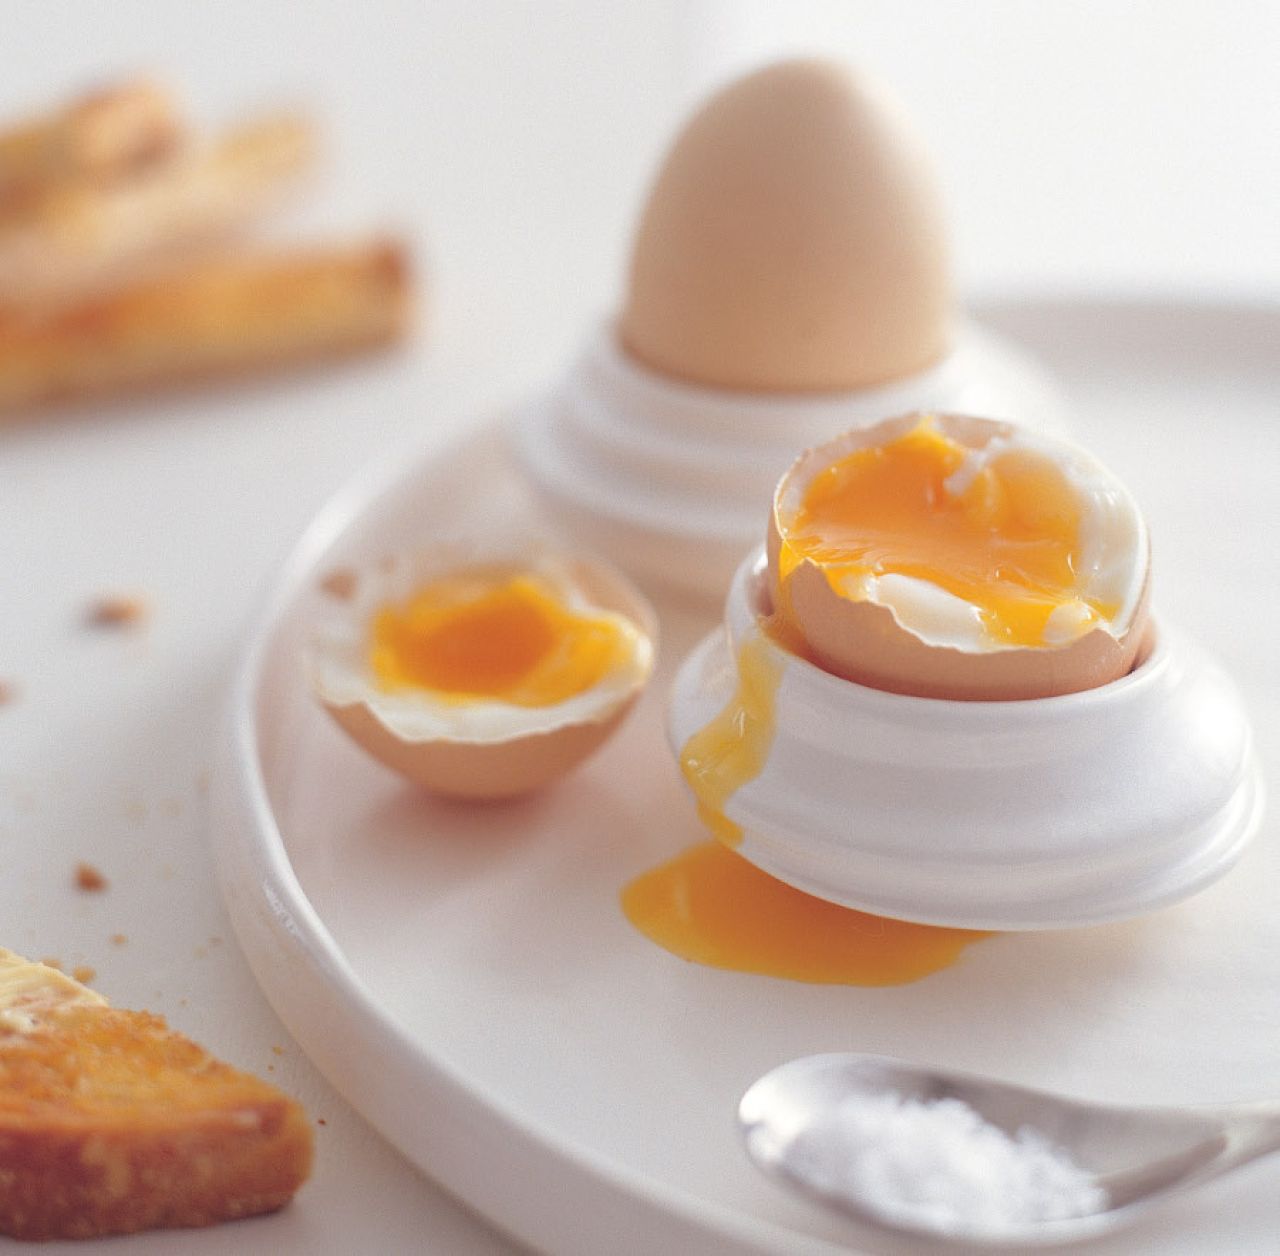 Jedz jaja i chudnij!